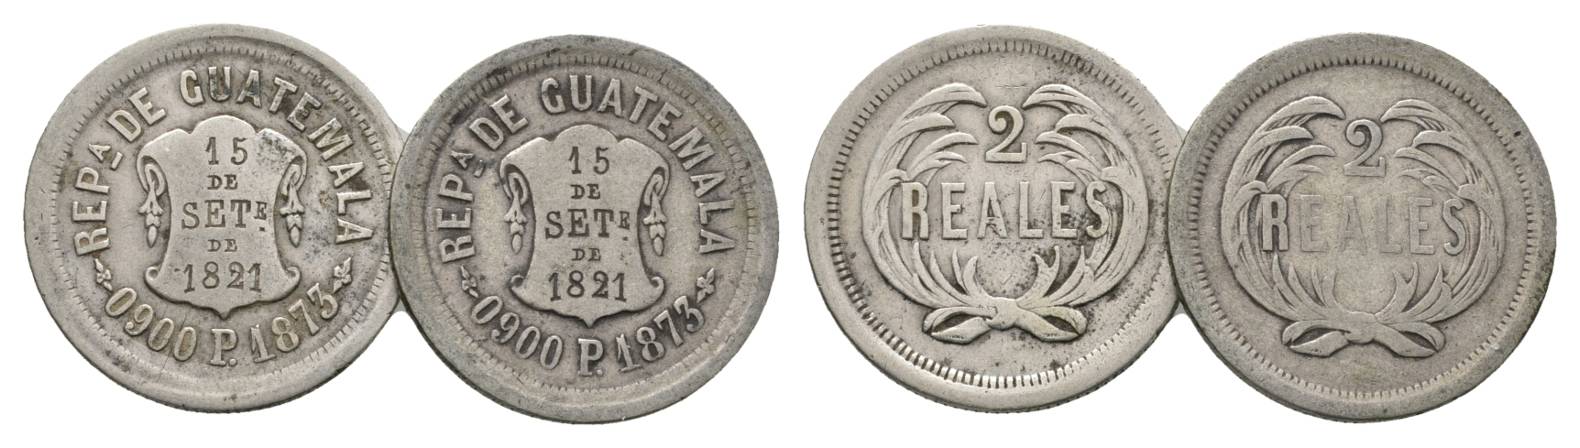  Guatemala, 2 Real 1873   